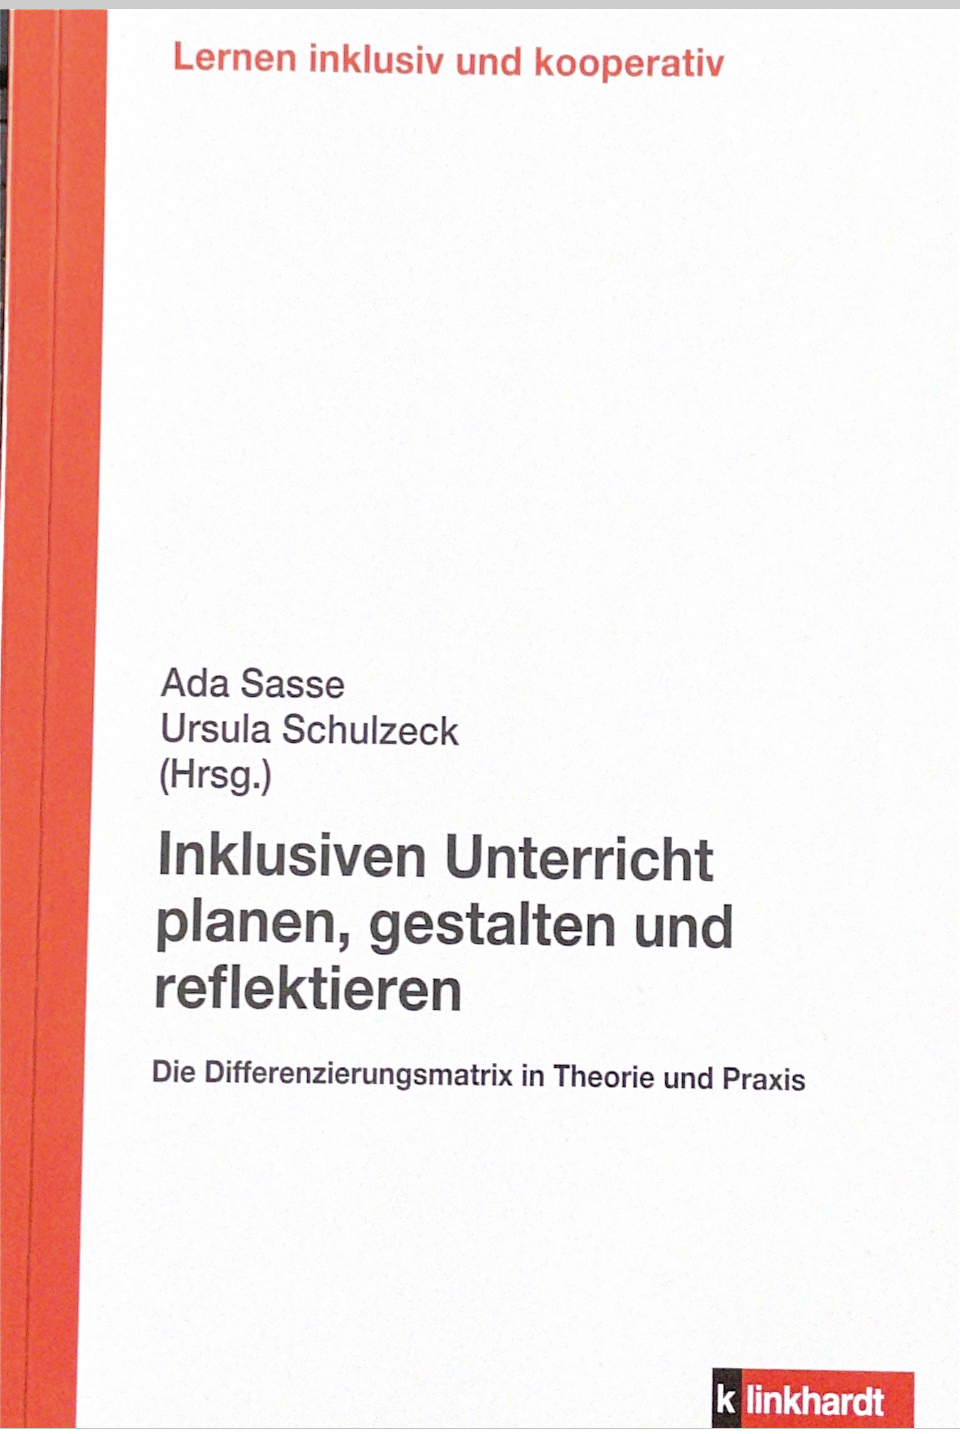 Buch "Inklusiven Unterricht planen, gestalten und reflektieren"